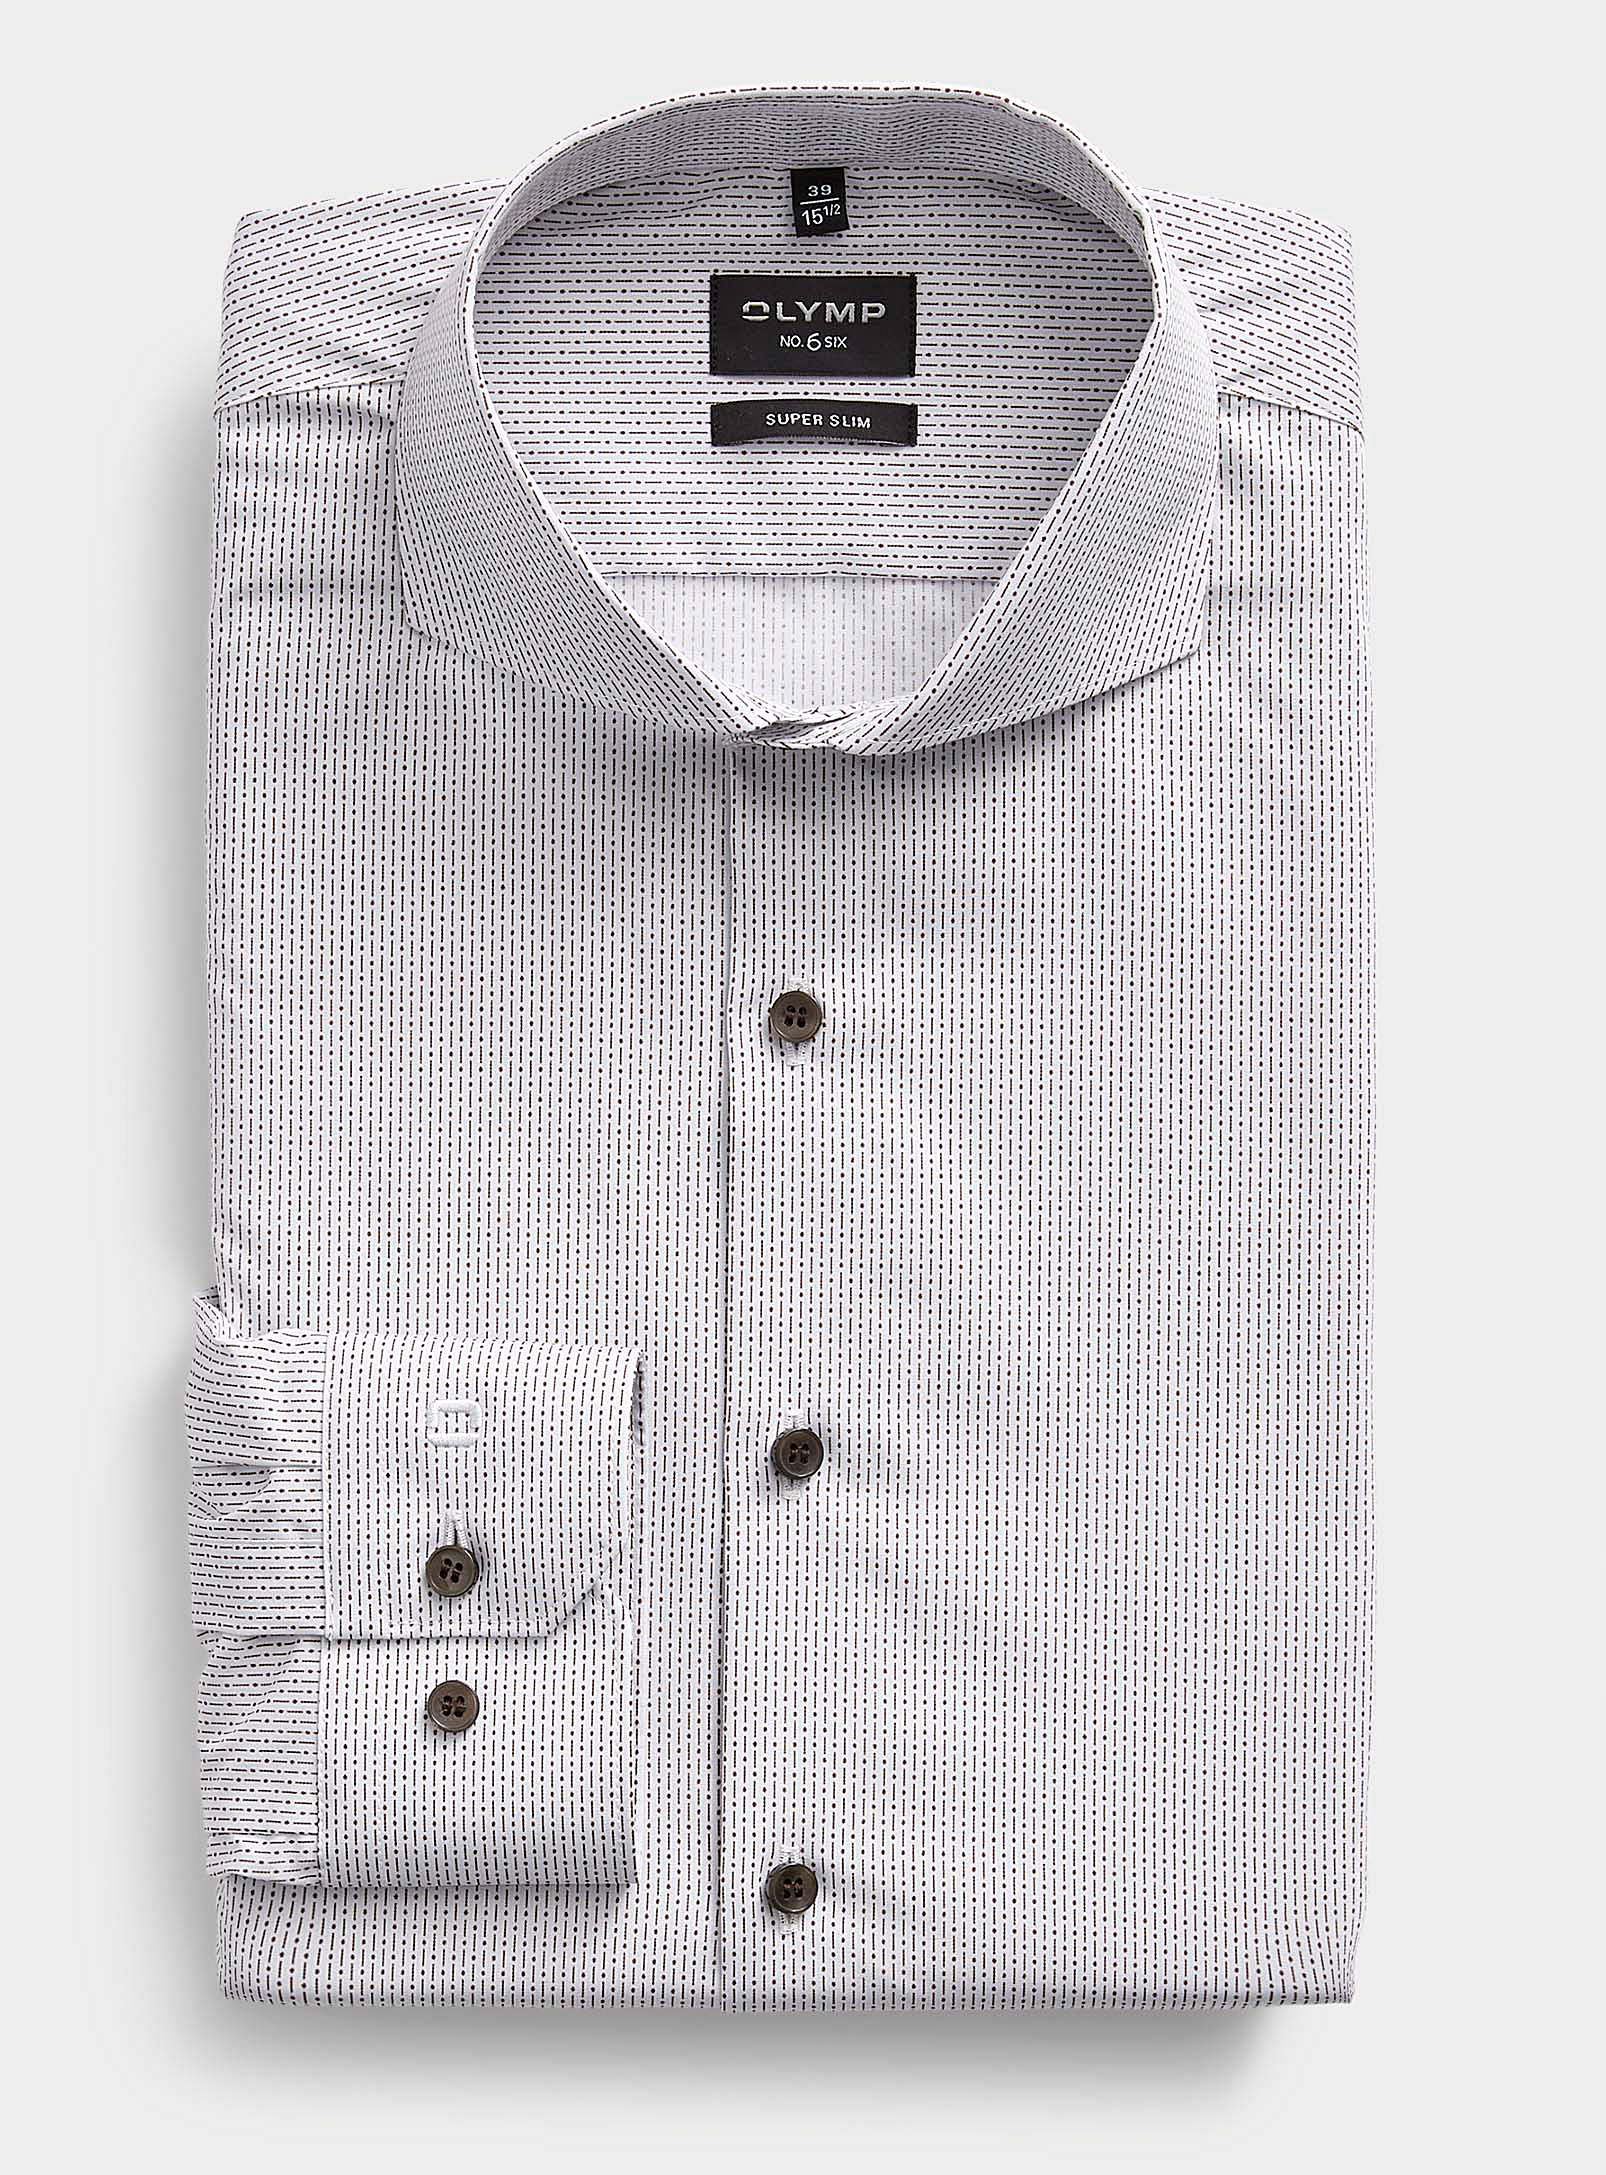 Olymp - La chemise lignes pointées Coupe ajustée